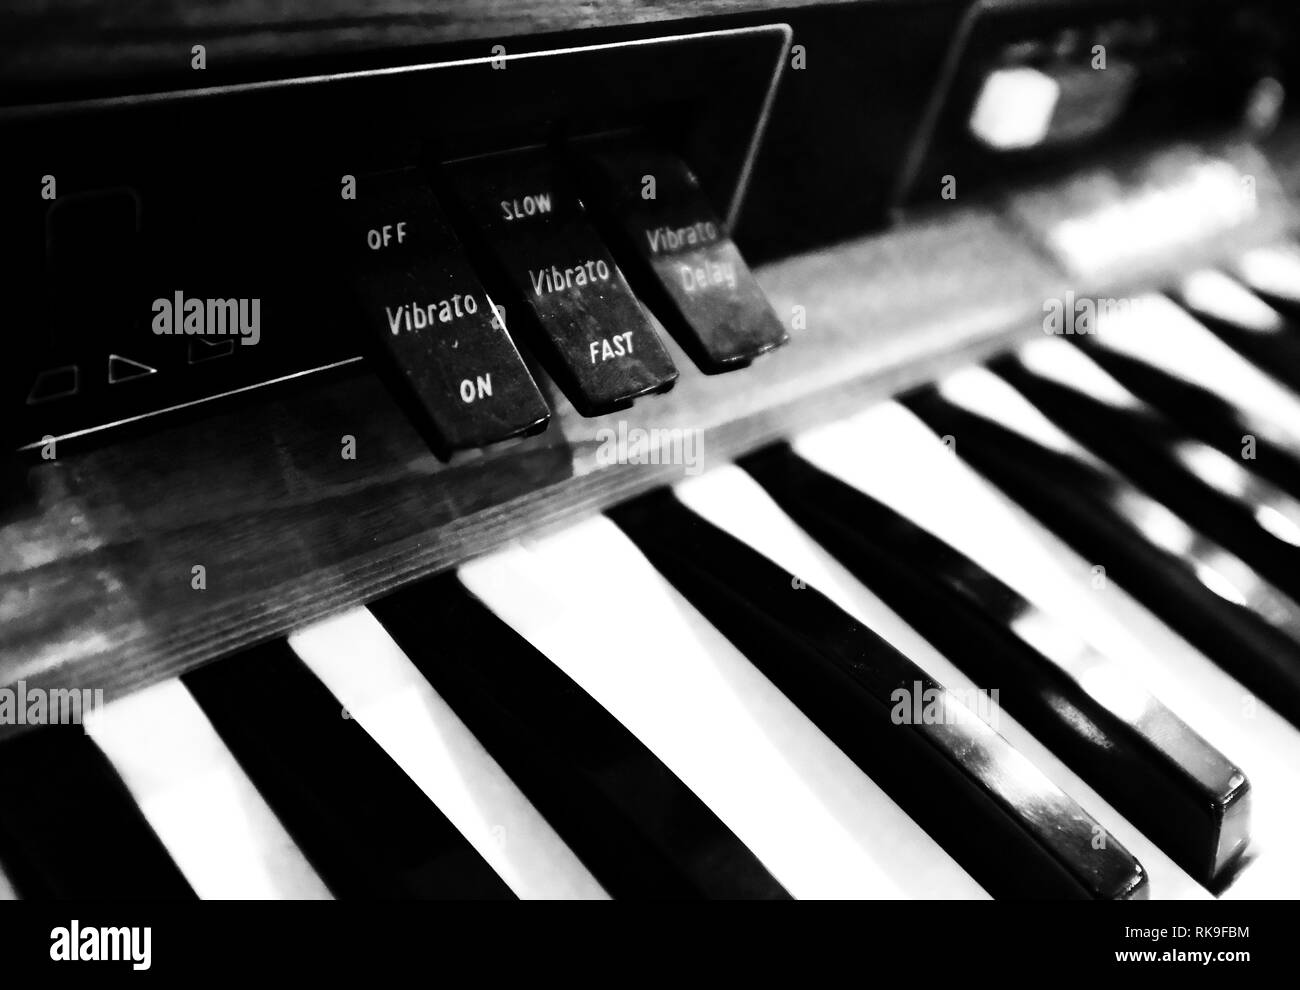 Farfisa organ keyboard in a professional recording studio Stock Photo -  Alamy